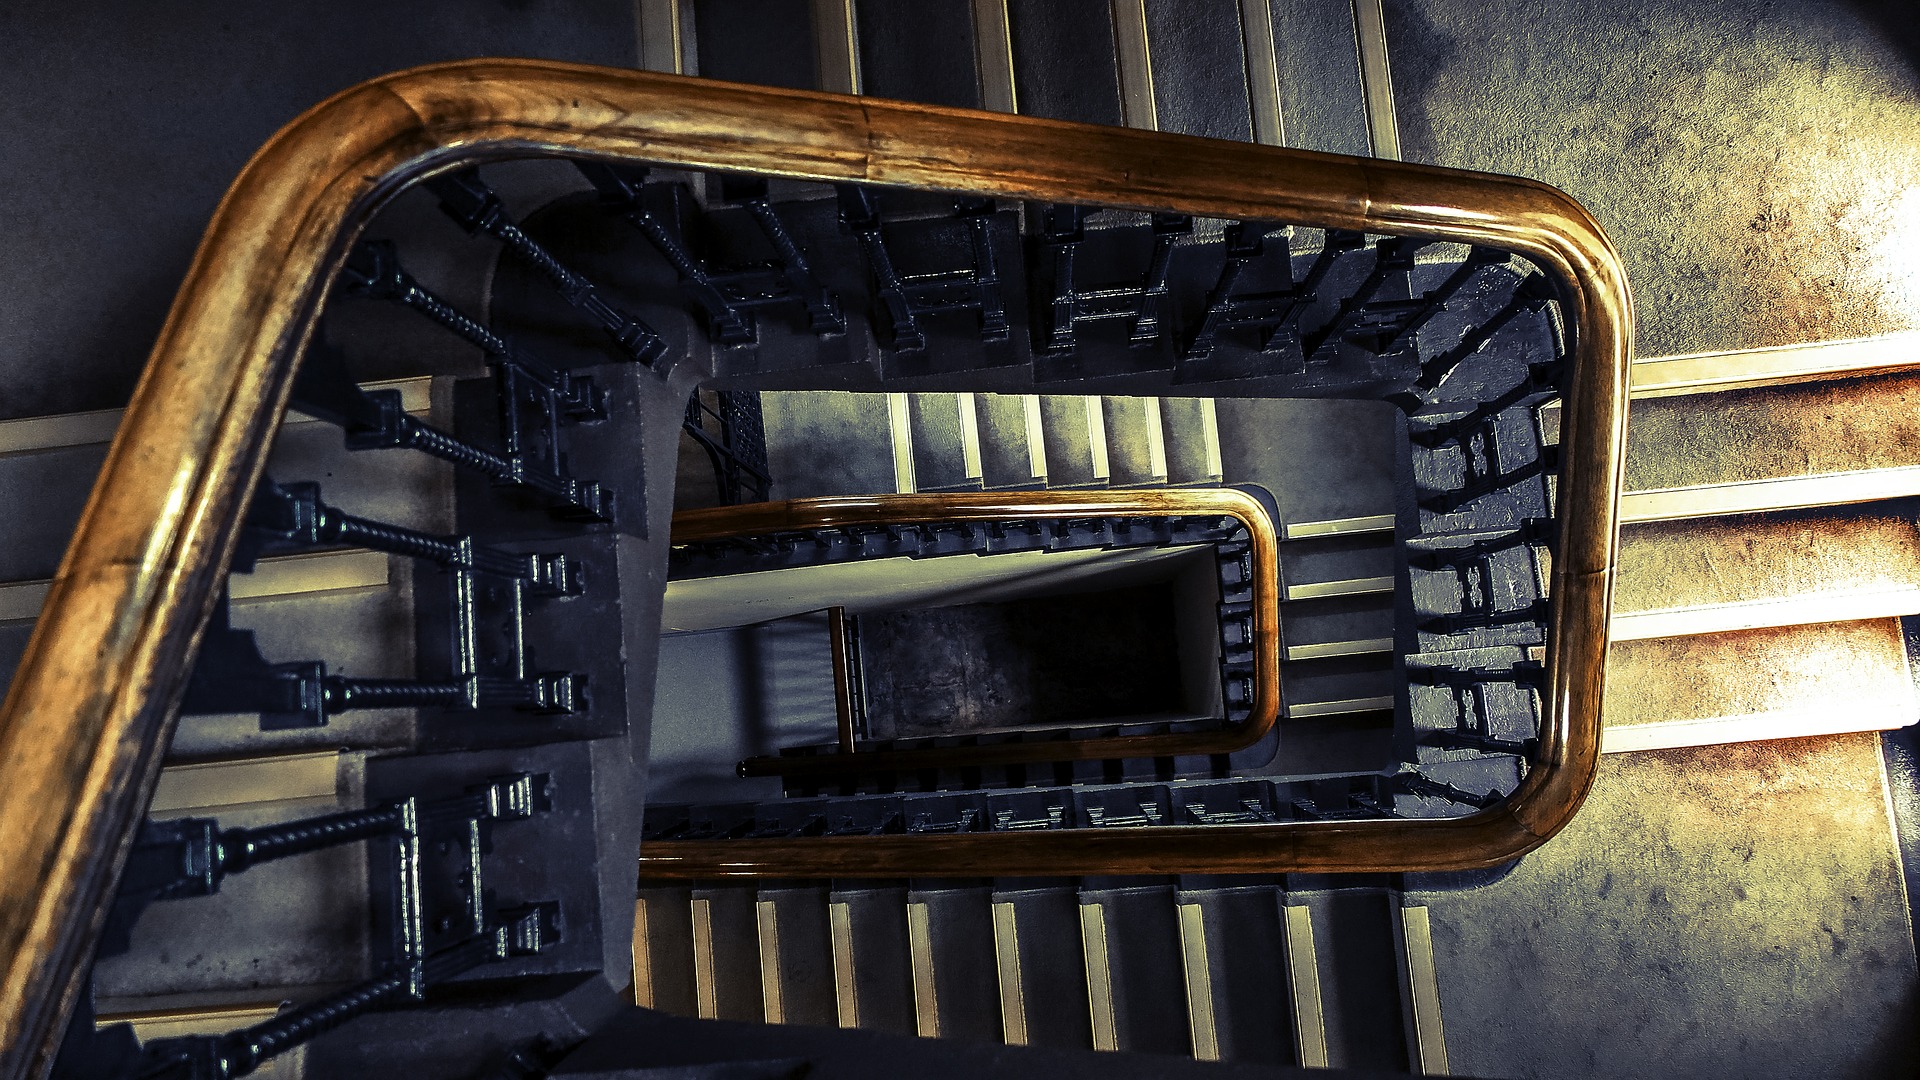 ocelové schodiště